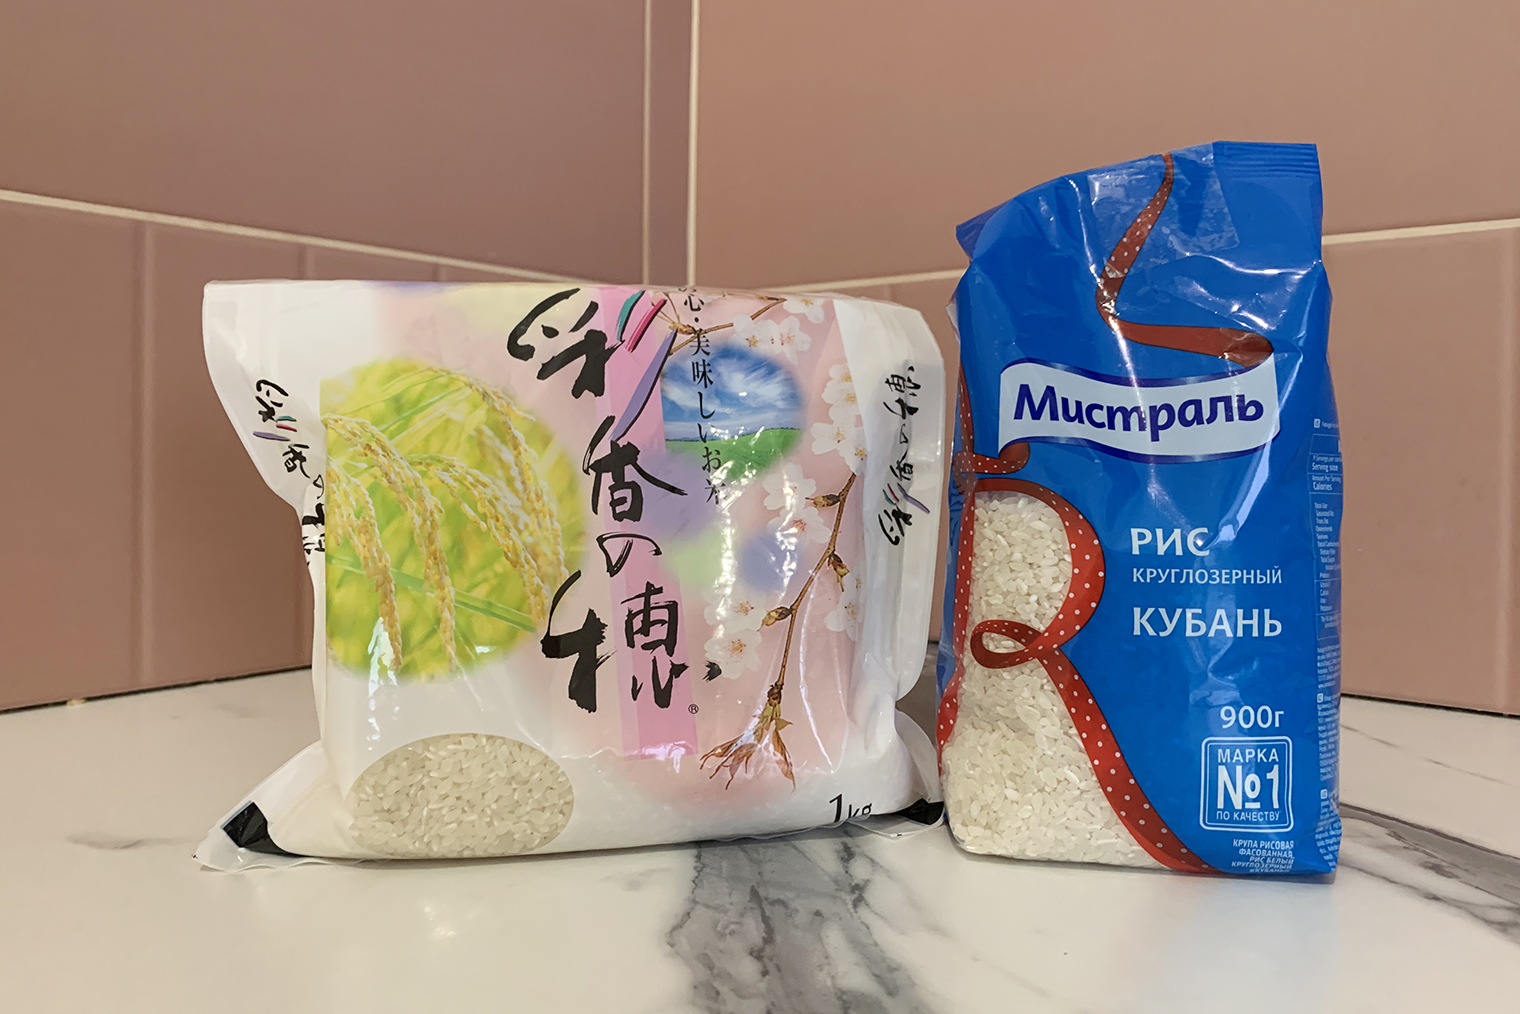 Зерна у японского и российского круглозерного риса примерно одинаковые. Я готовил из обоих вариантов — онигири не разваливаются, особенно если завернуть их в водоросли